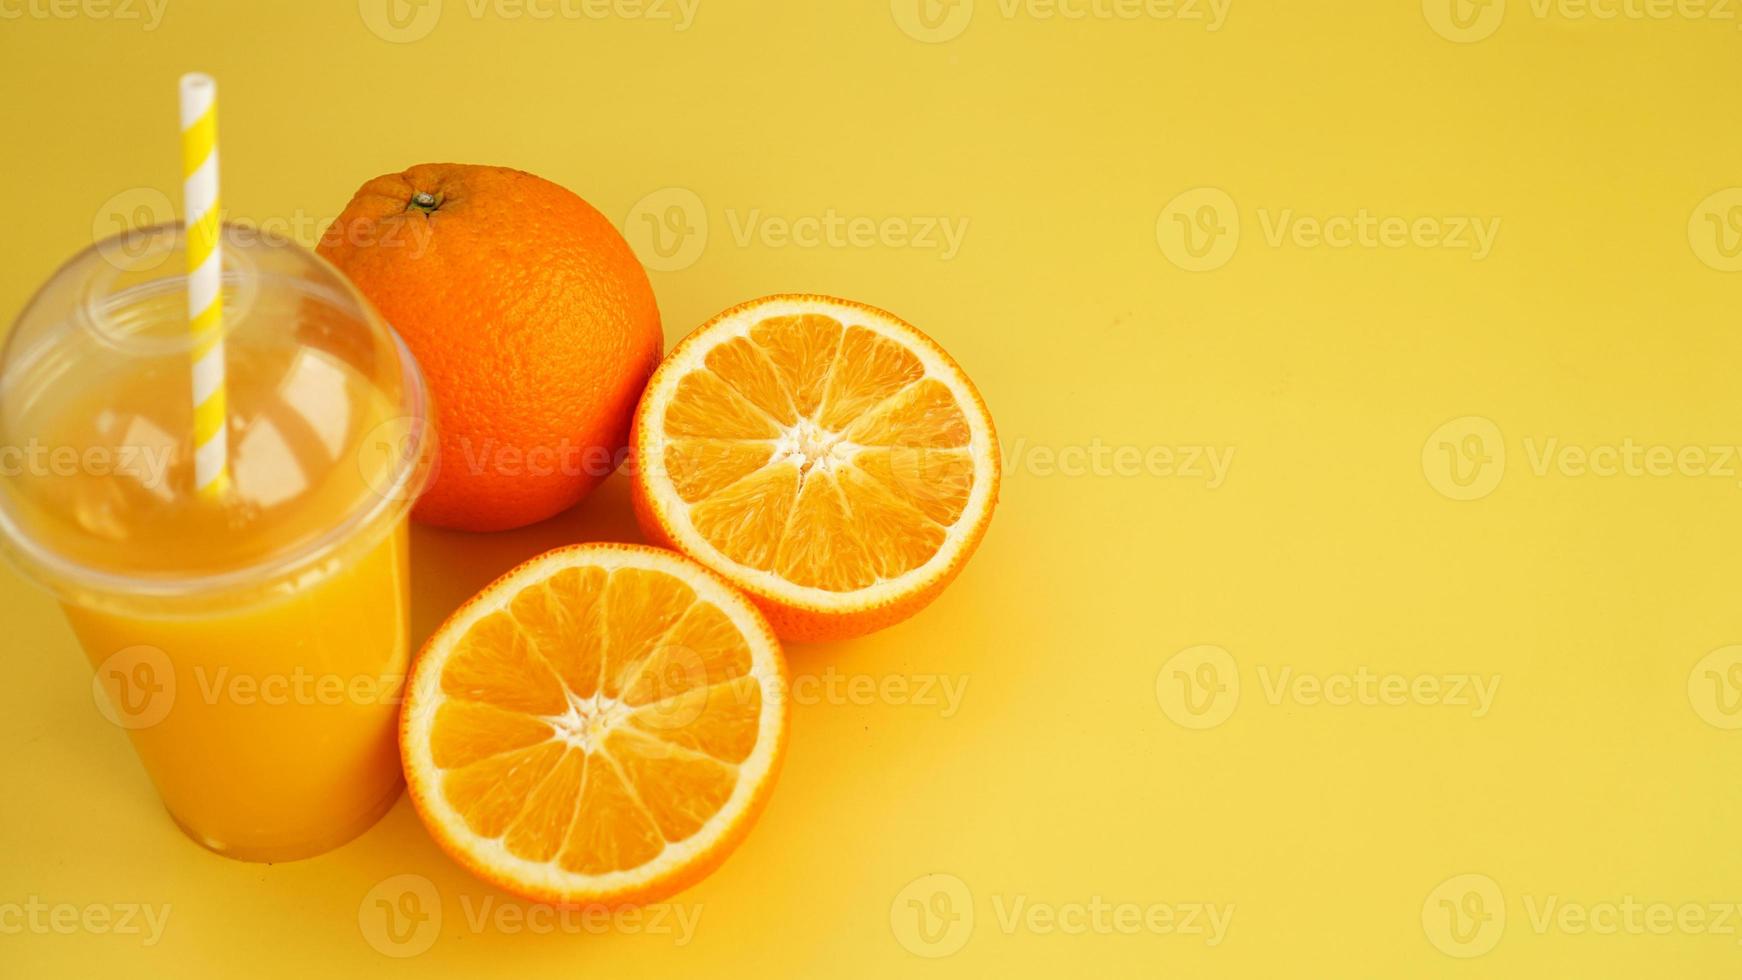 jugo de naranja en un vaso de plástico con una pajita. naranja en rodajas foto